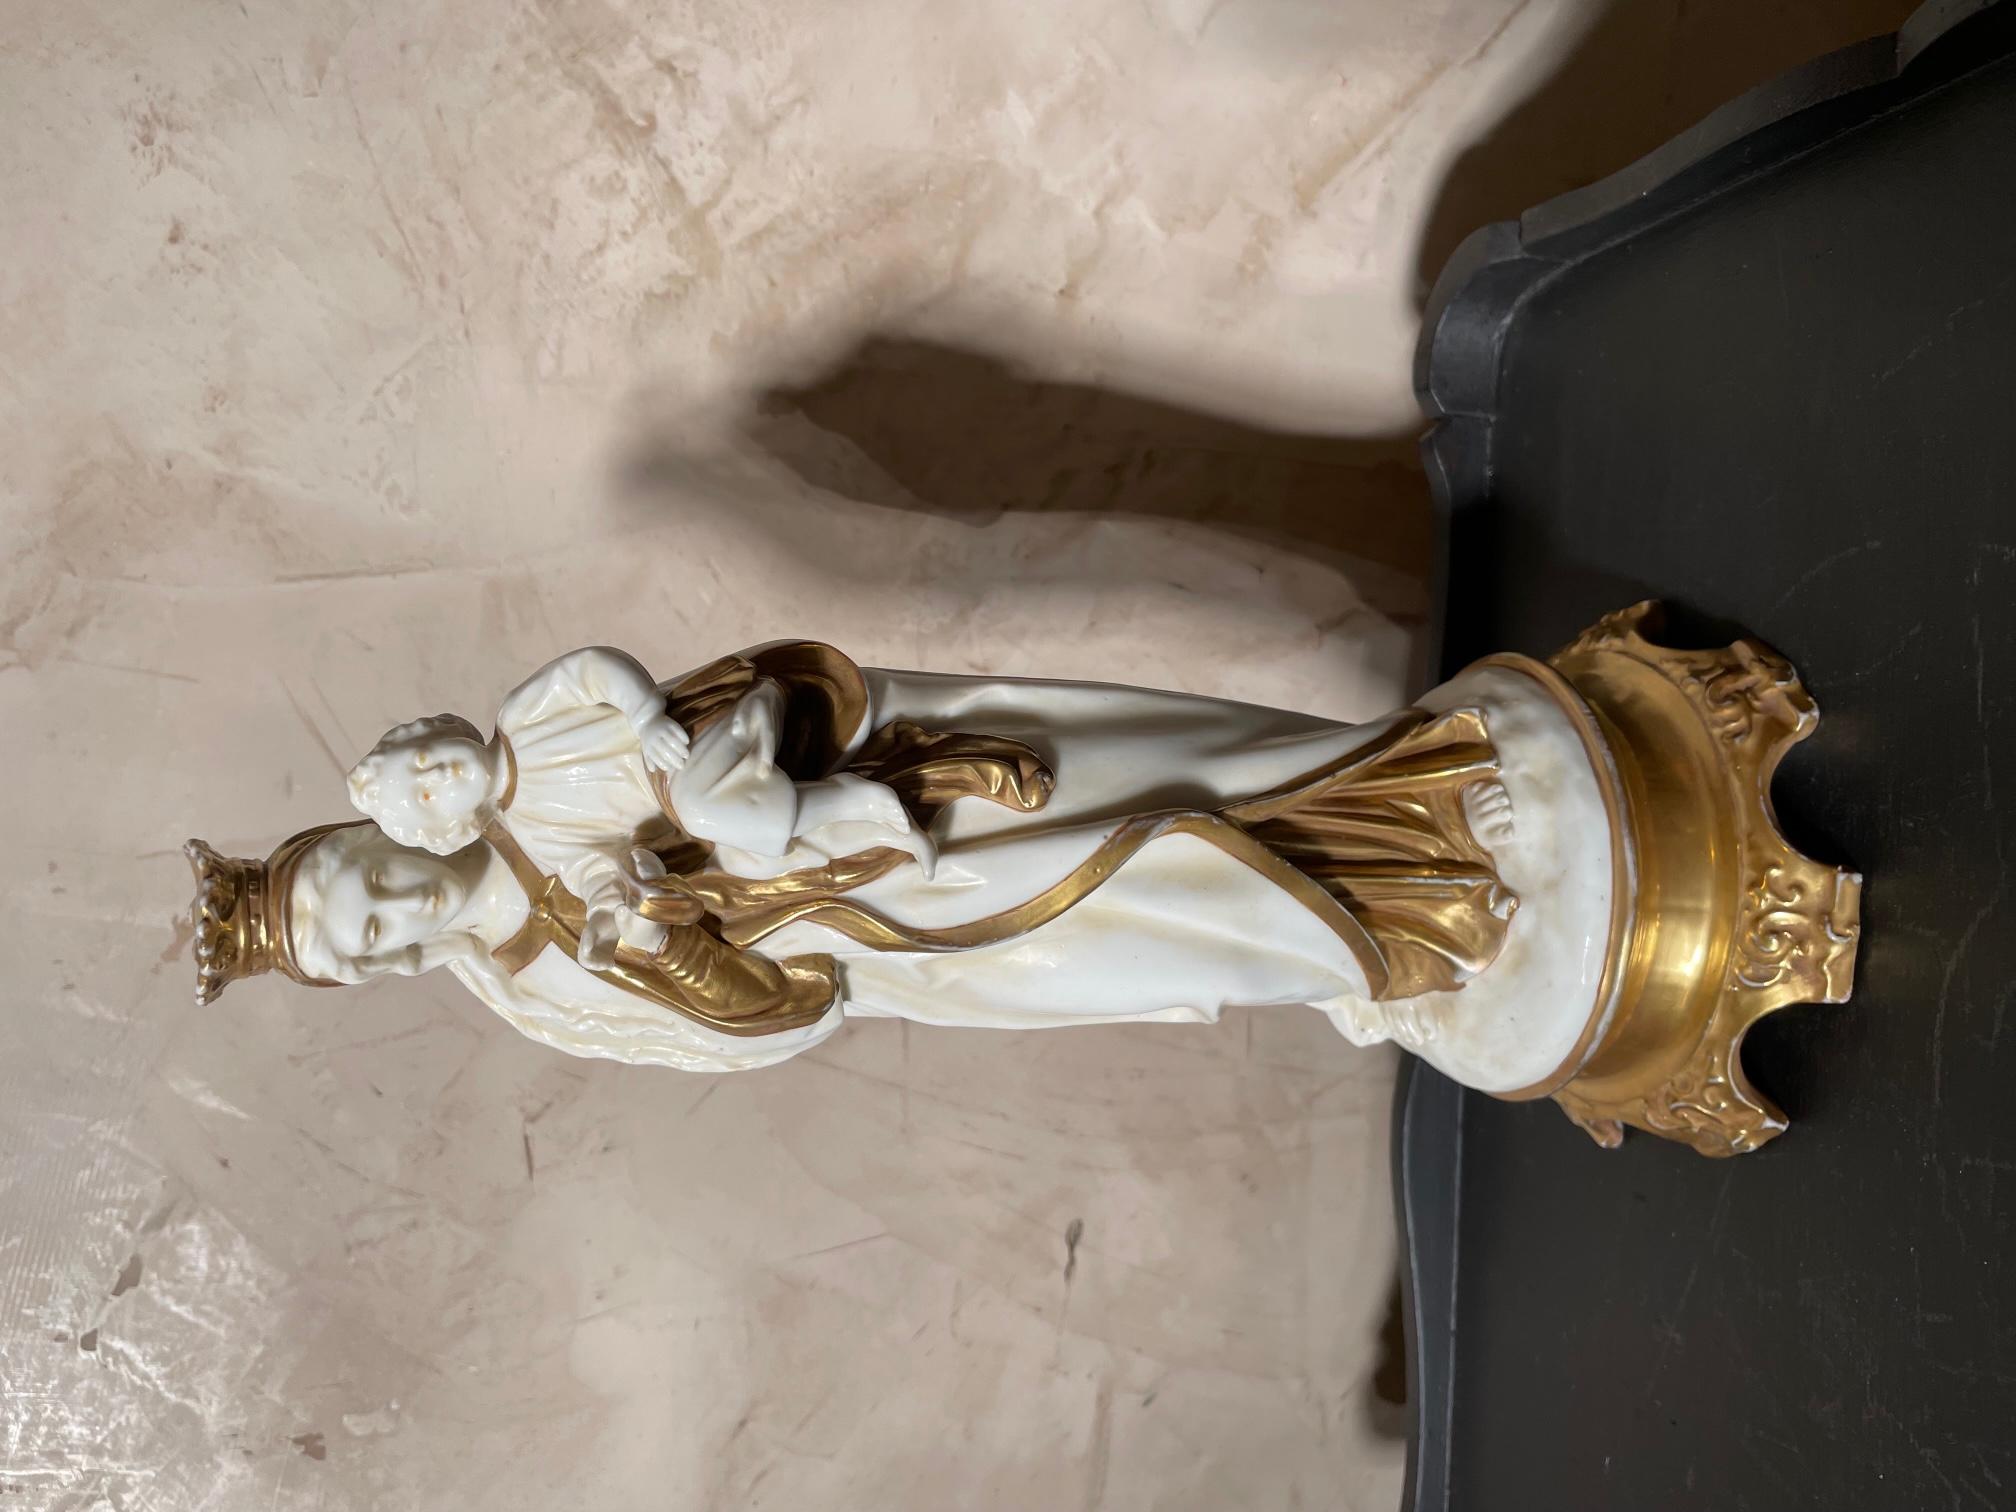 Belle statue de jeune fille et son enfant en porcelaine italienne du 19e siècle, datant des années 1850.
Un dommage à l'arrière de la vierge a été rénové.
Belle qualité.
Capodimonte est une porcelaine produite par la manufacture du même nom